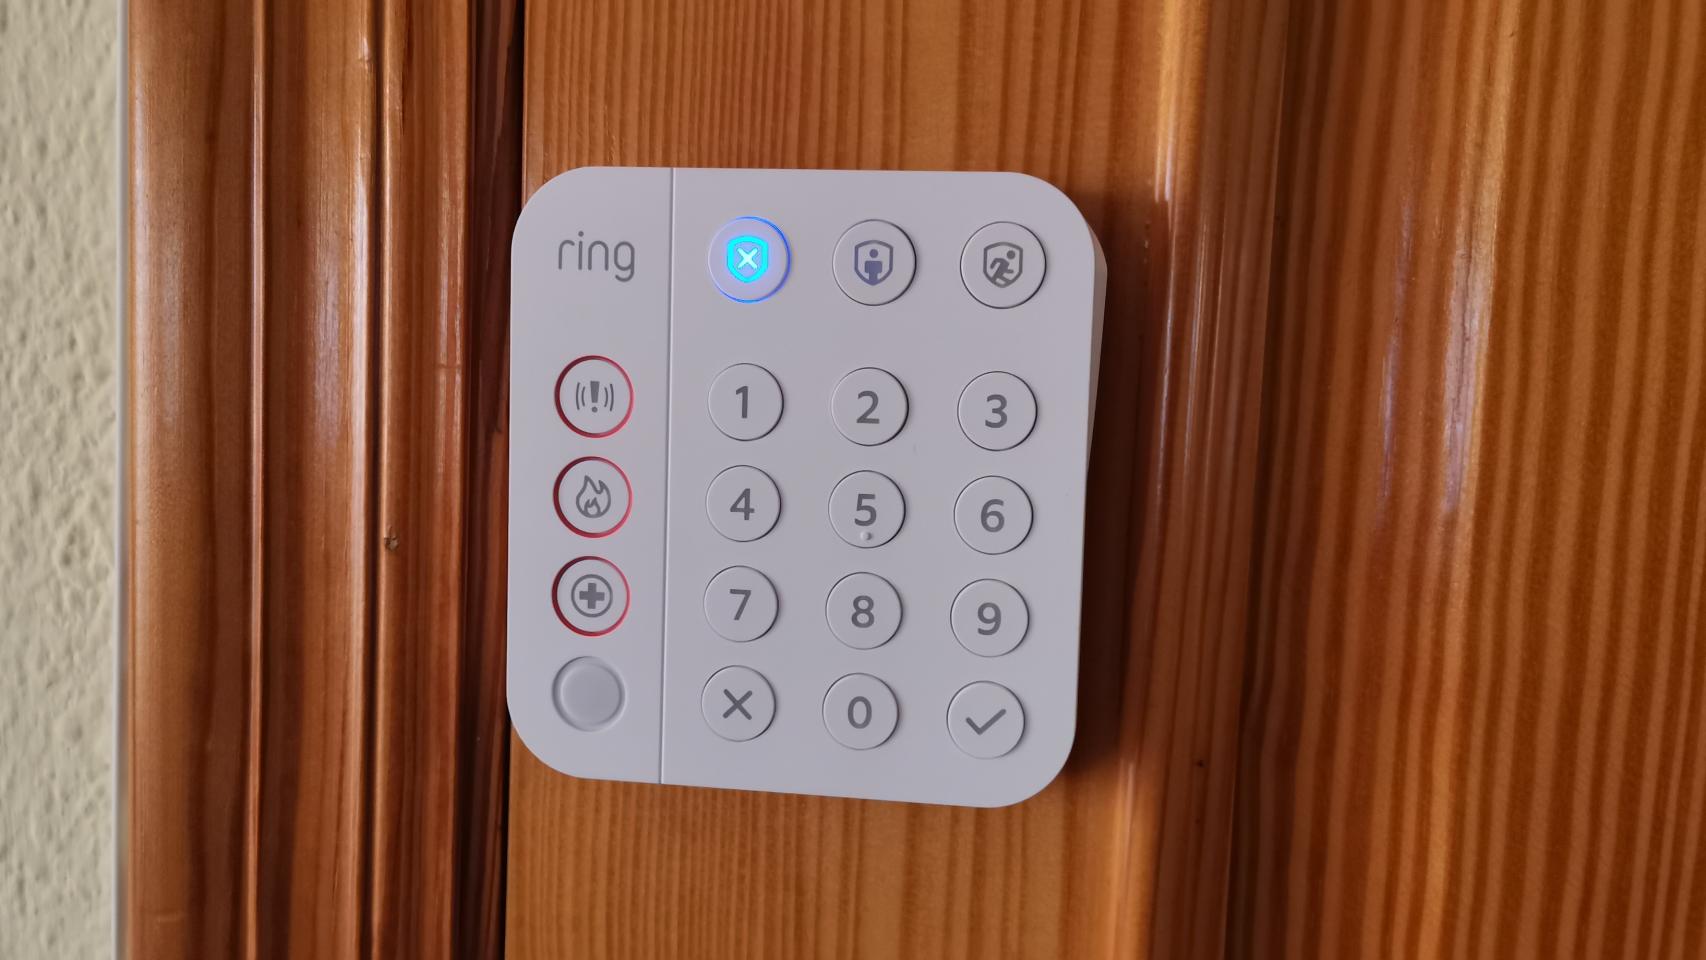 Kit de Alarma Ring, la mejor opción de seguridad [Unboxing + Instalación] 